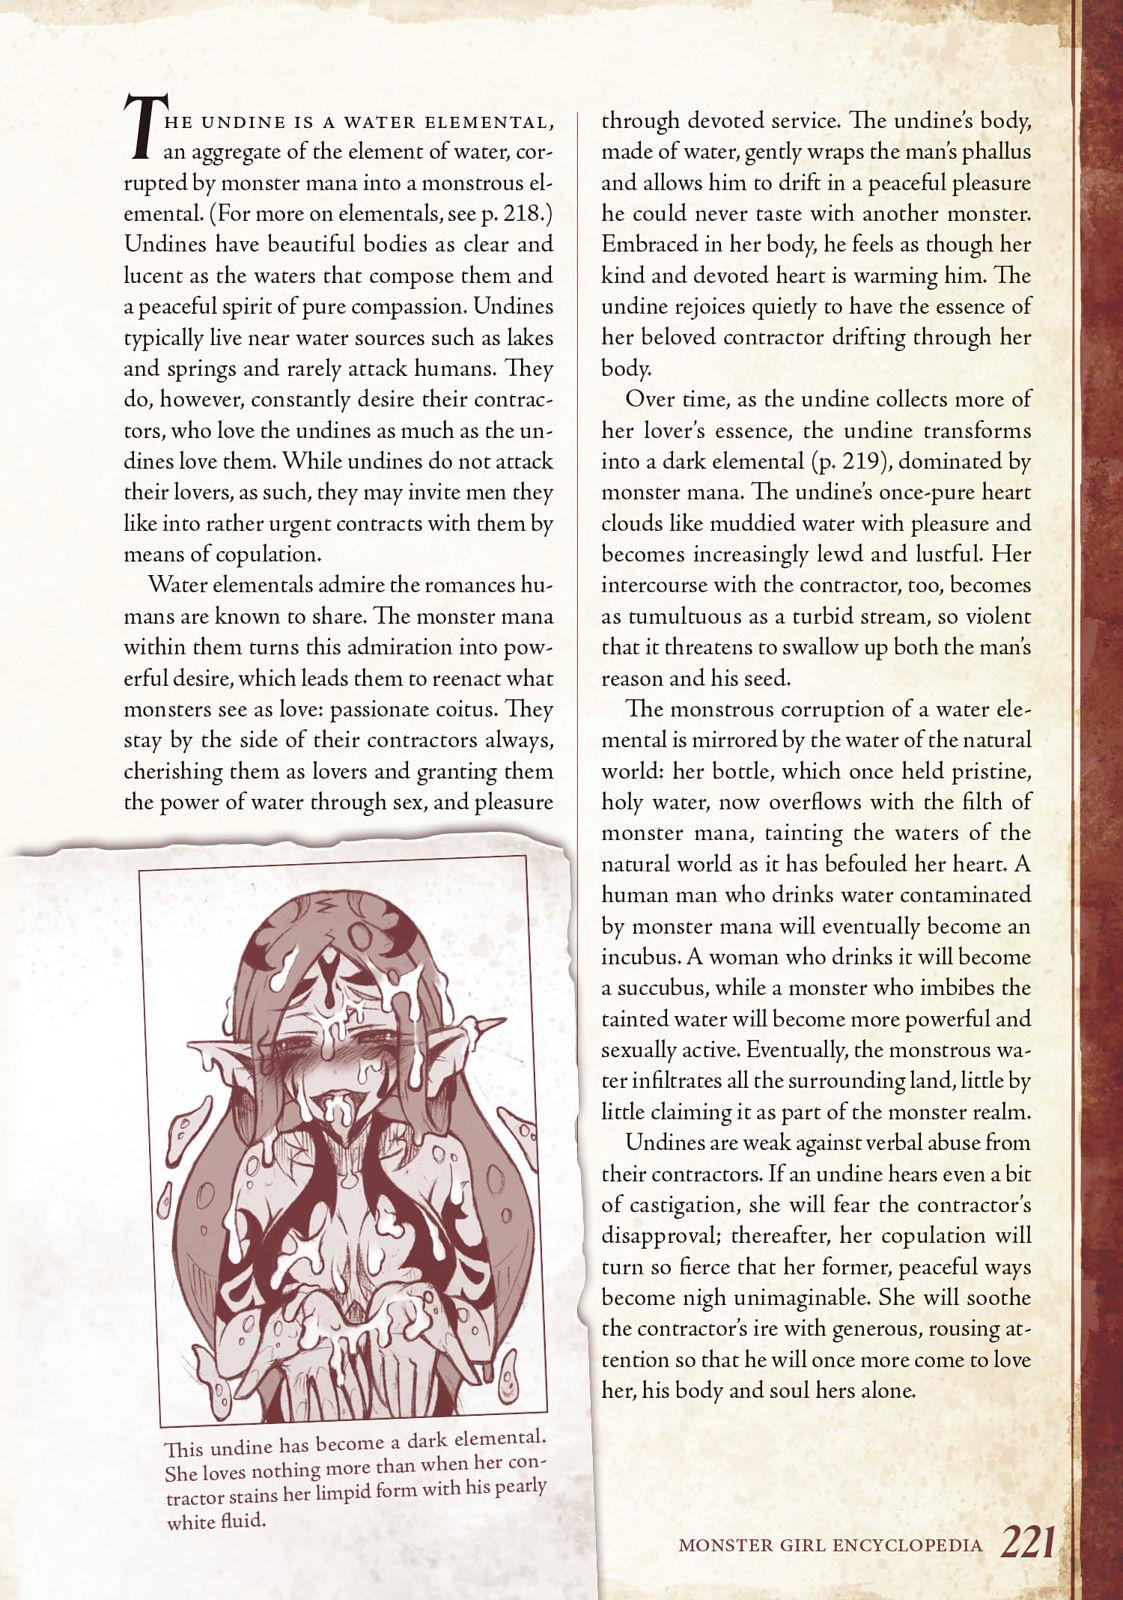 Monster Girl Encyclopedia Vol. 1 221